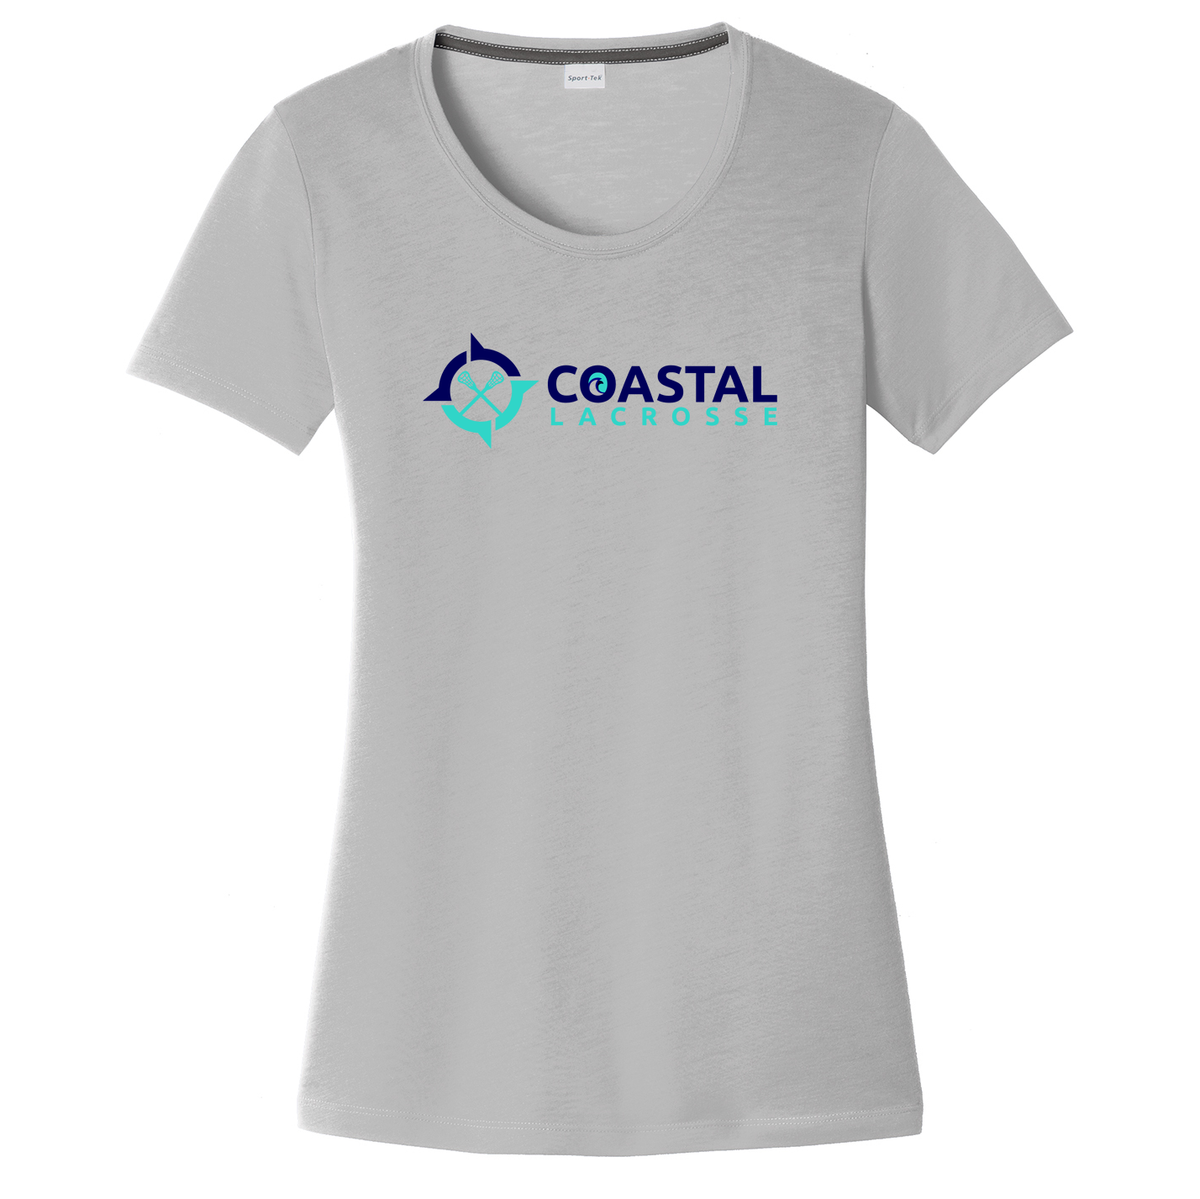 Coastal Lacrosse Women's CottonTouch Performance T-Shirt